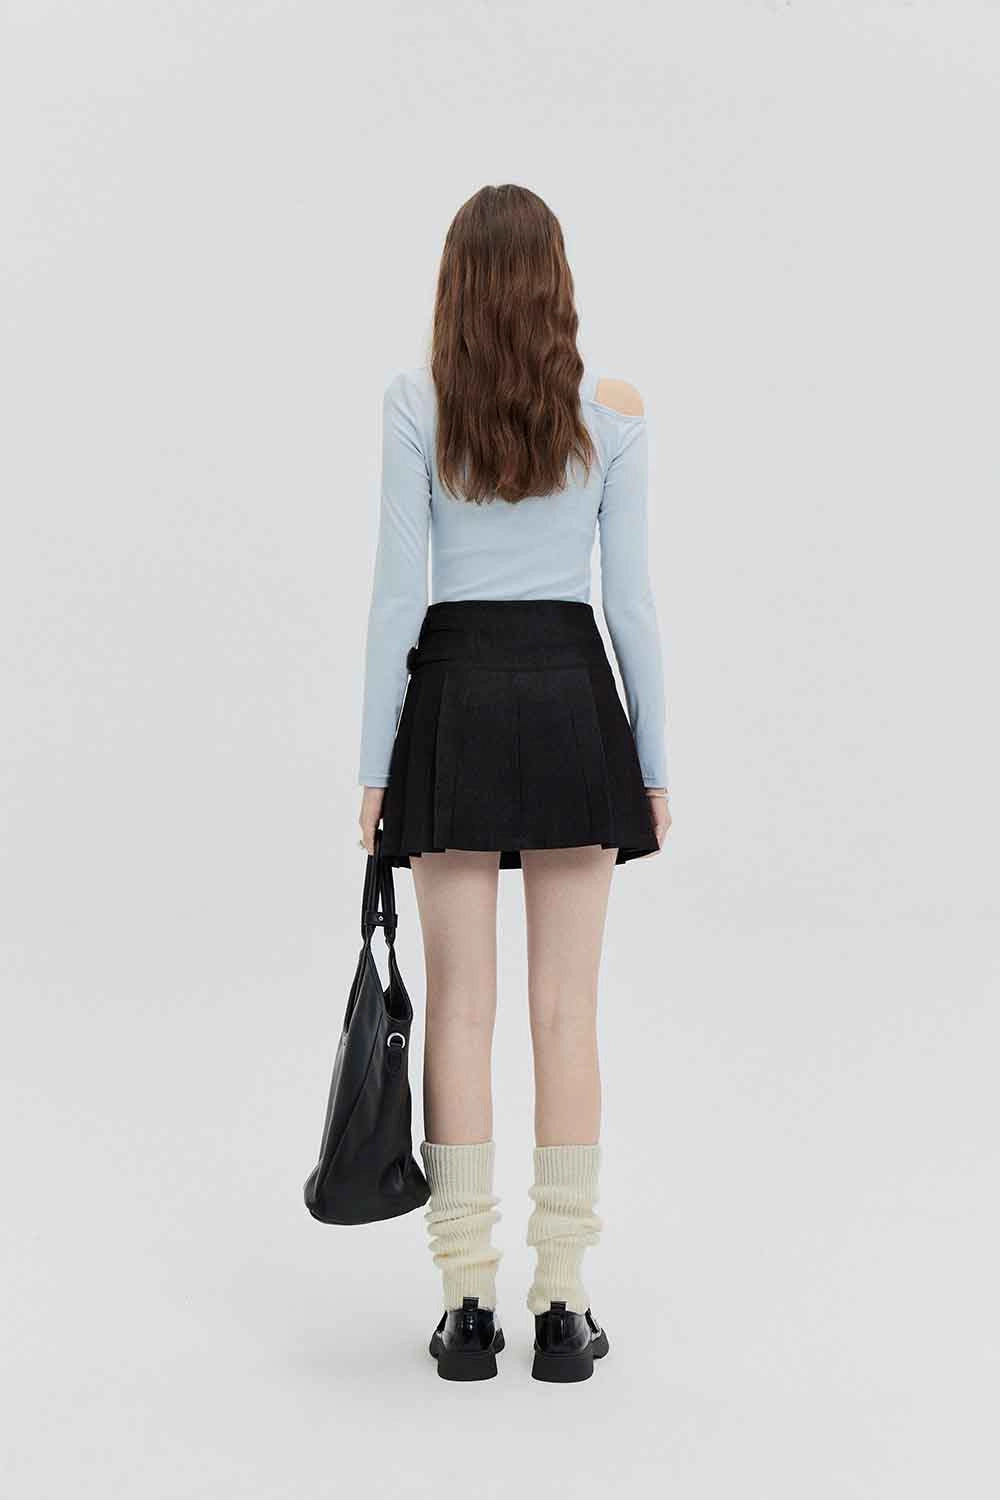 Skirt Mini A-Line Pinggang Tinggi Wanita dengan Perincian Tali Pinggang